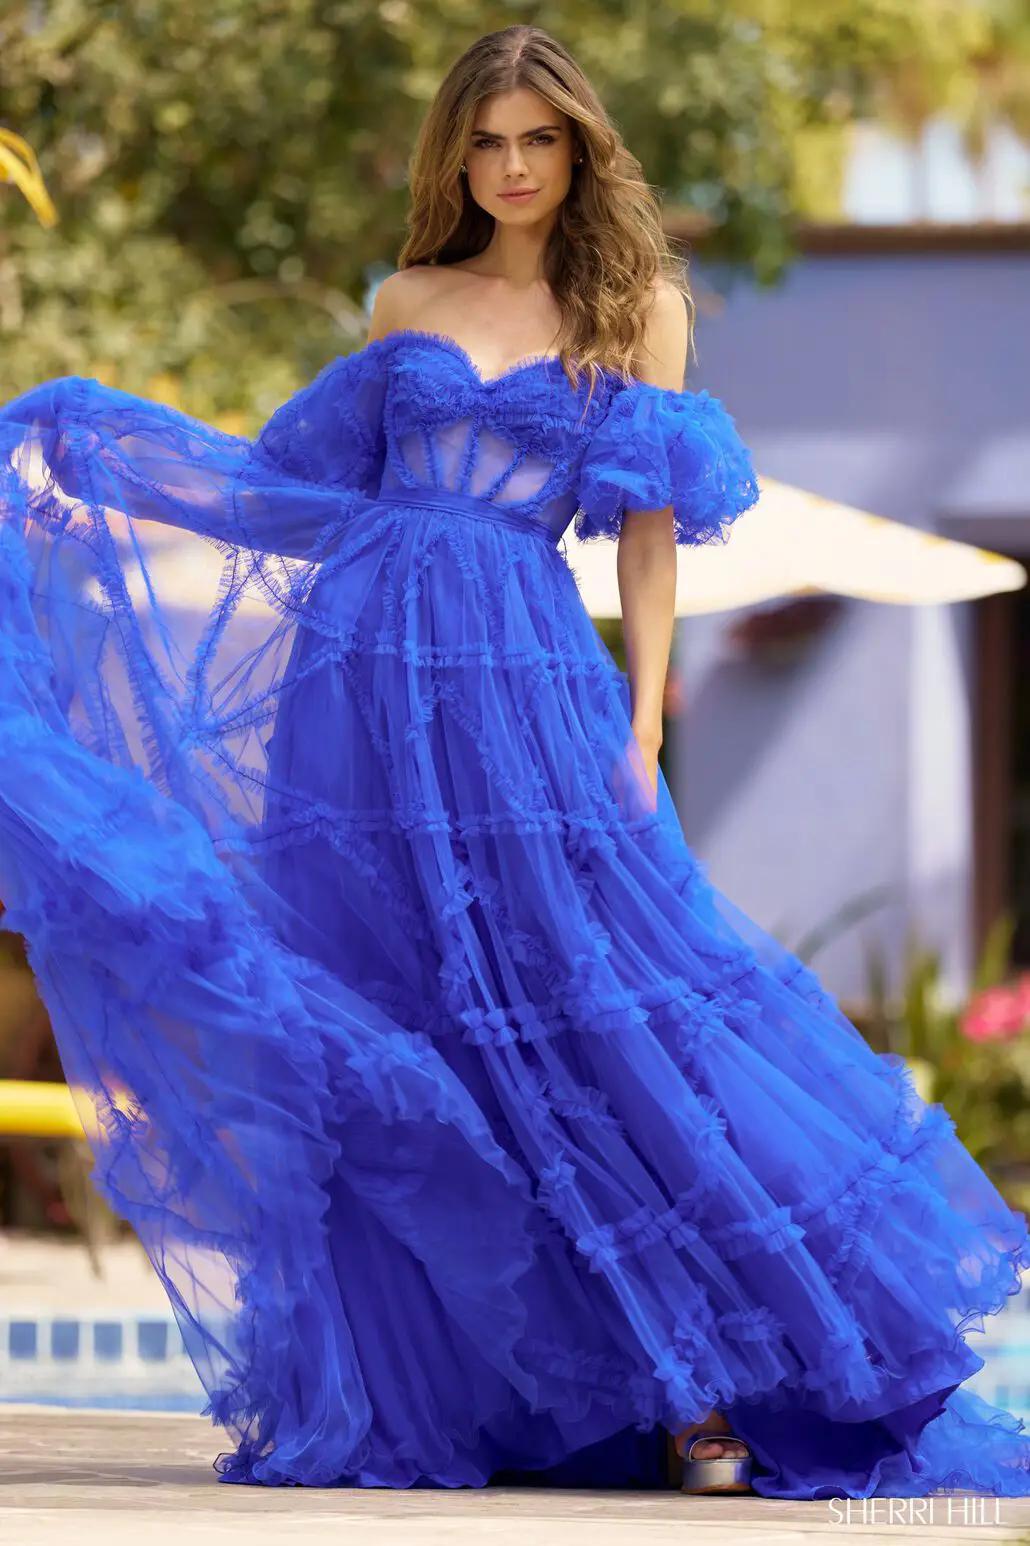 Model wearing a gown by Sherri Hill